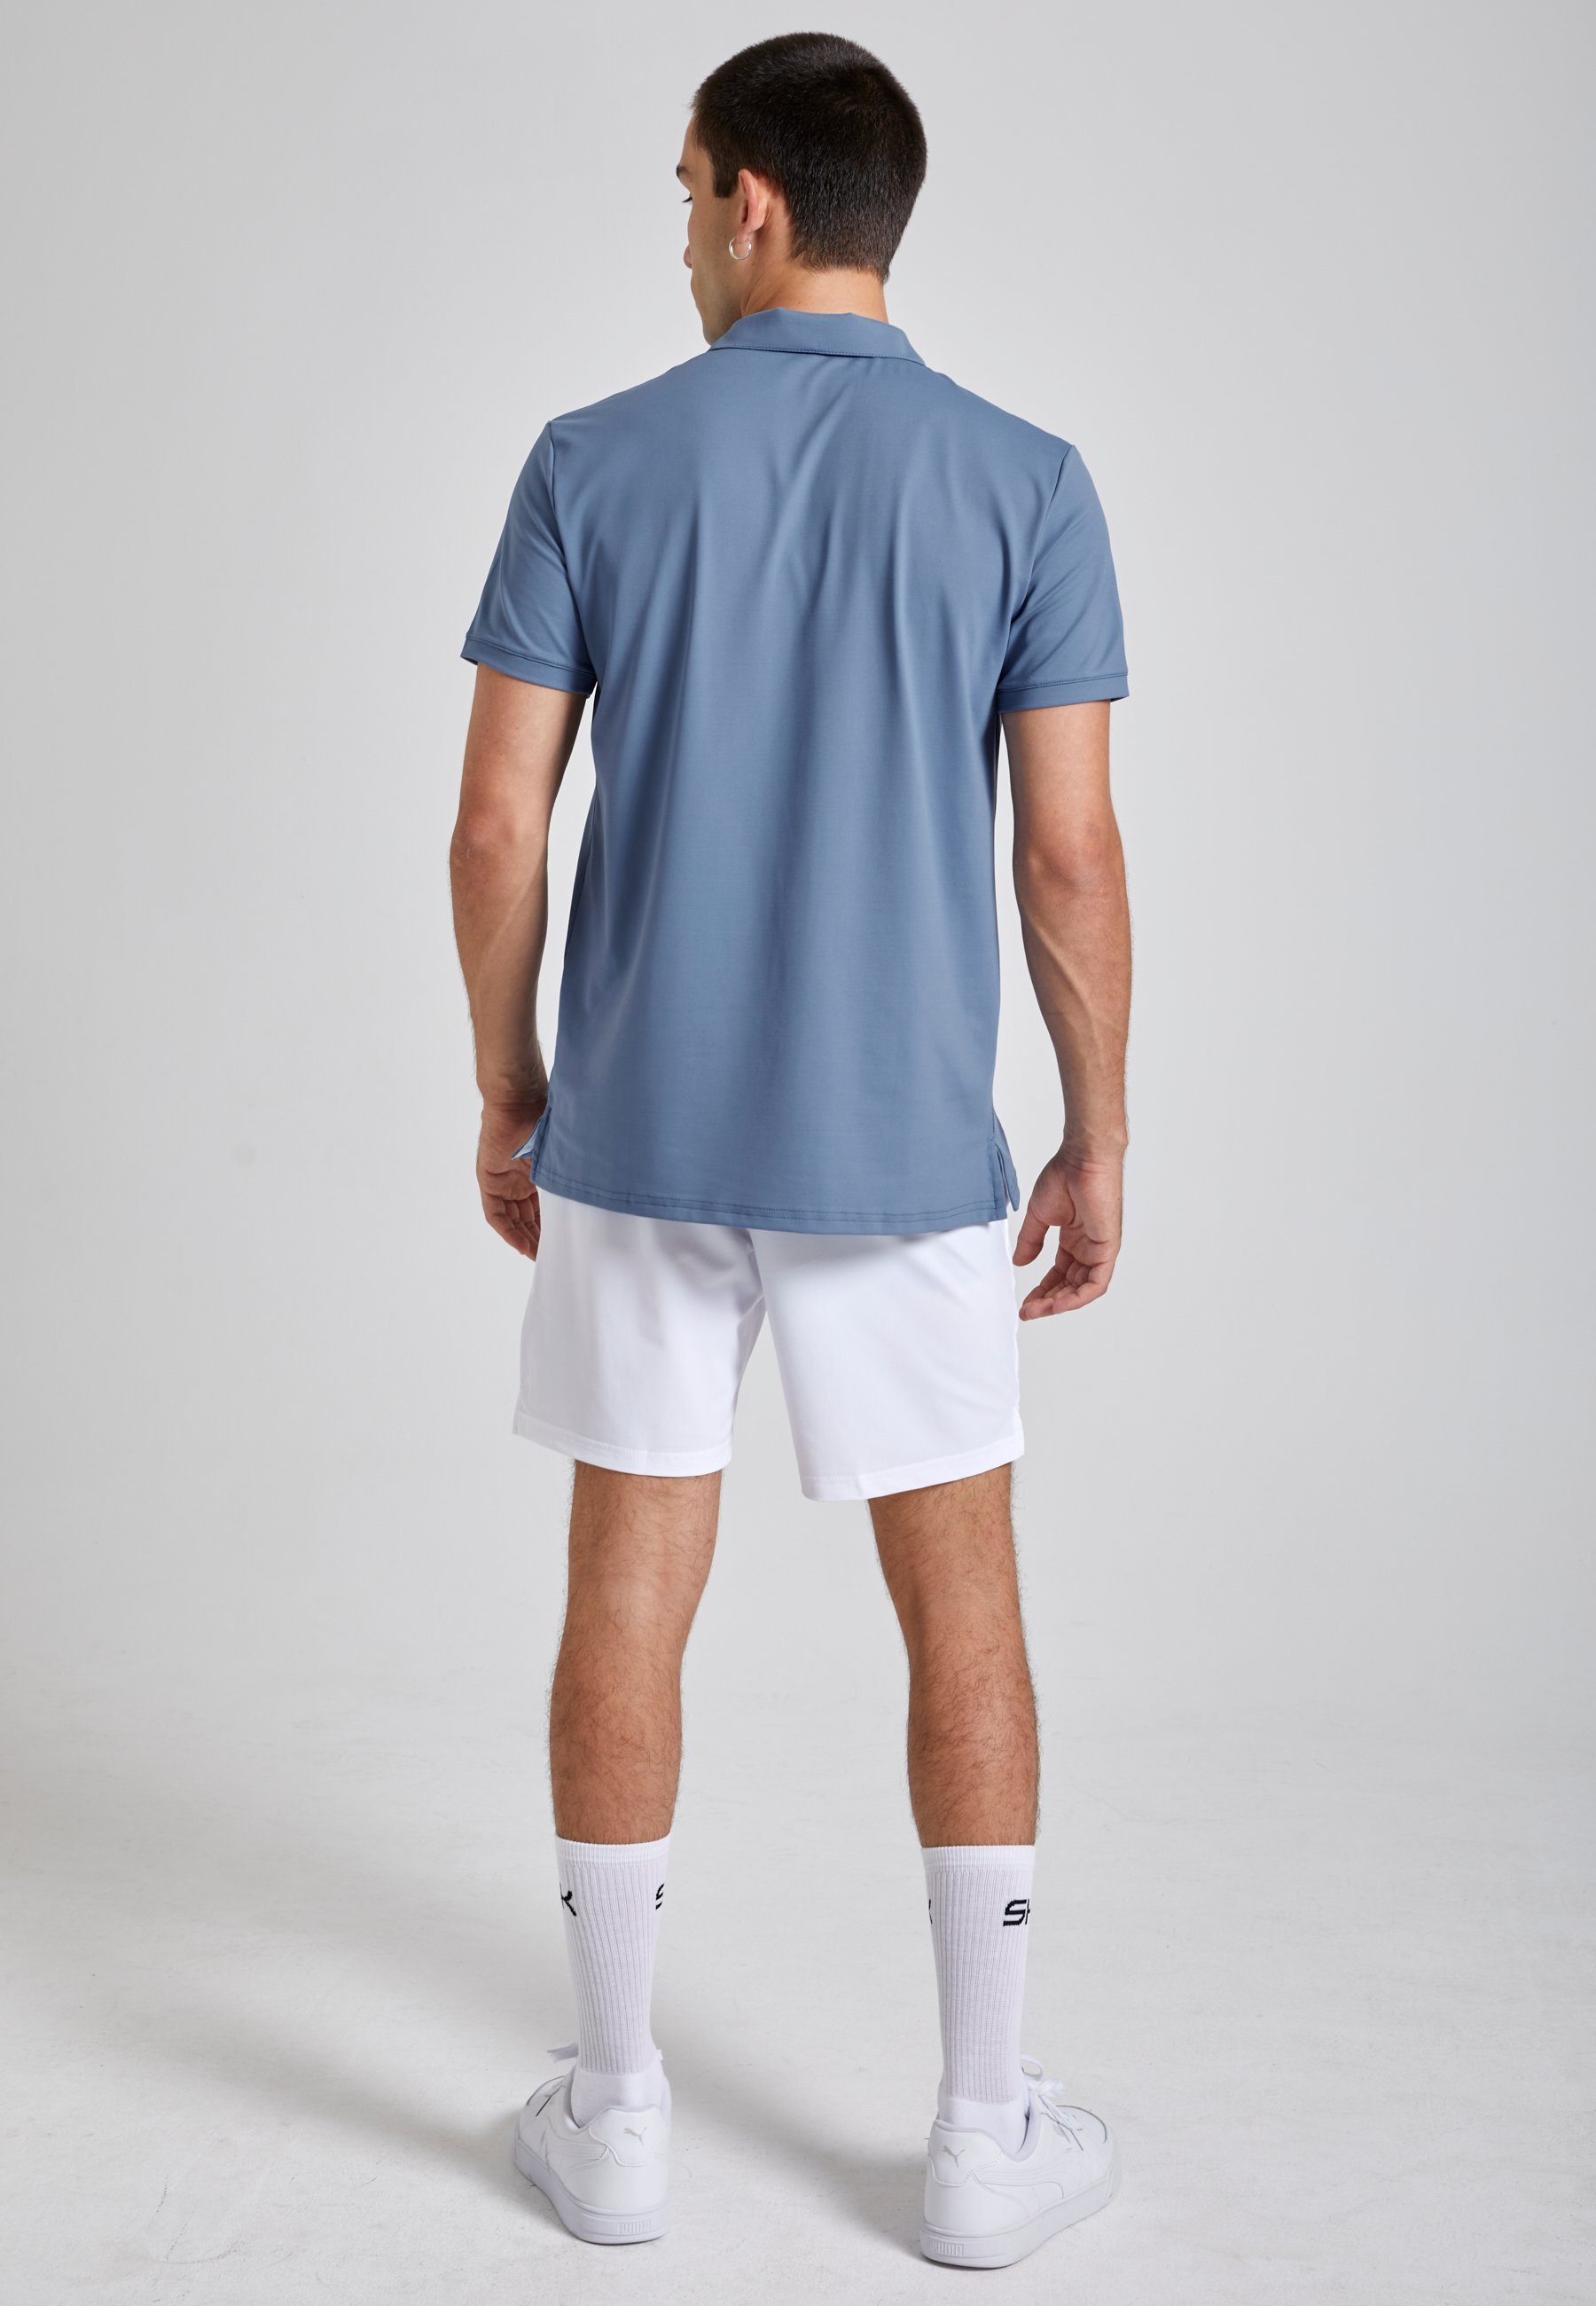 Jungen grau Shirt SPORTKIND Polo Herren & Kurzarm blau Funktionsshirt Golf